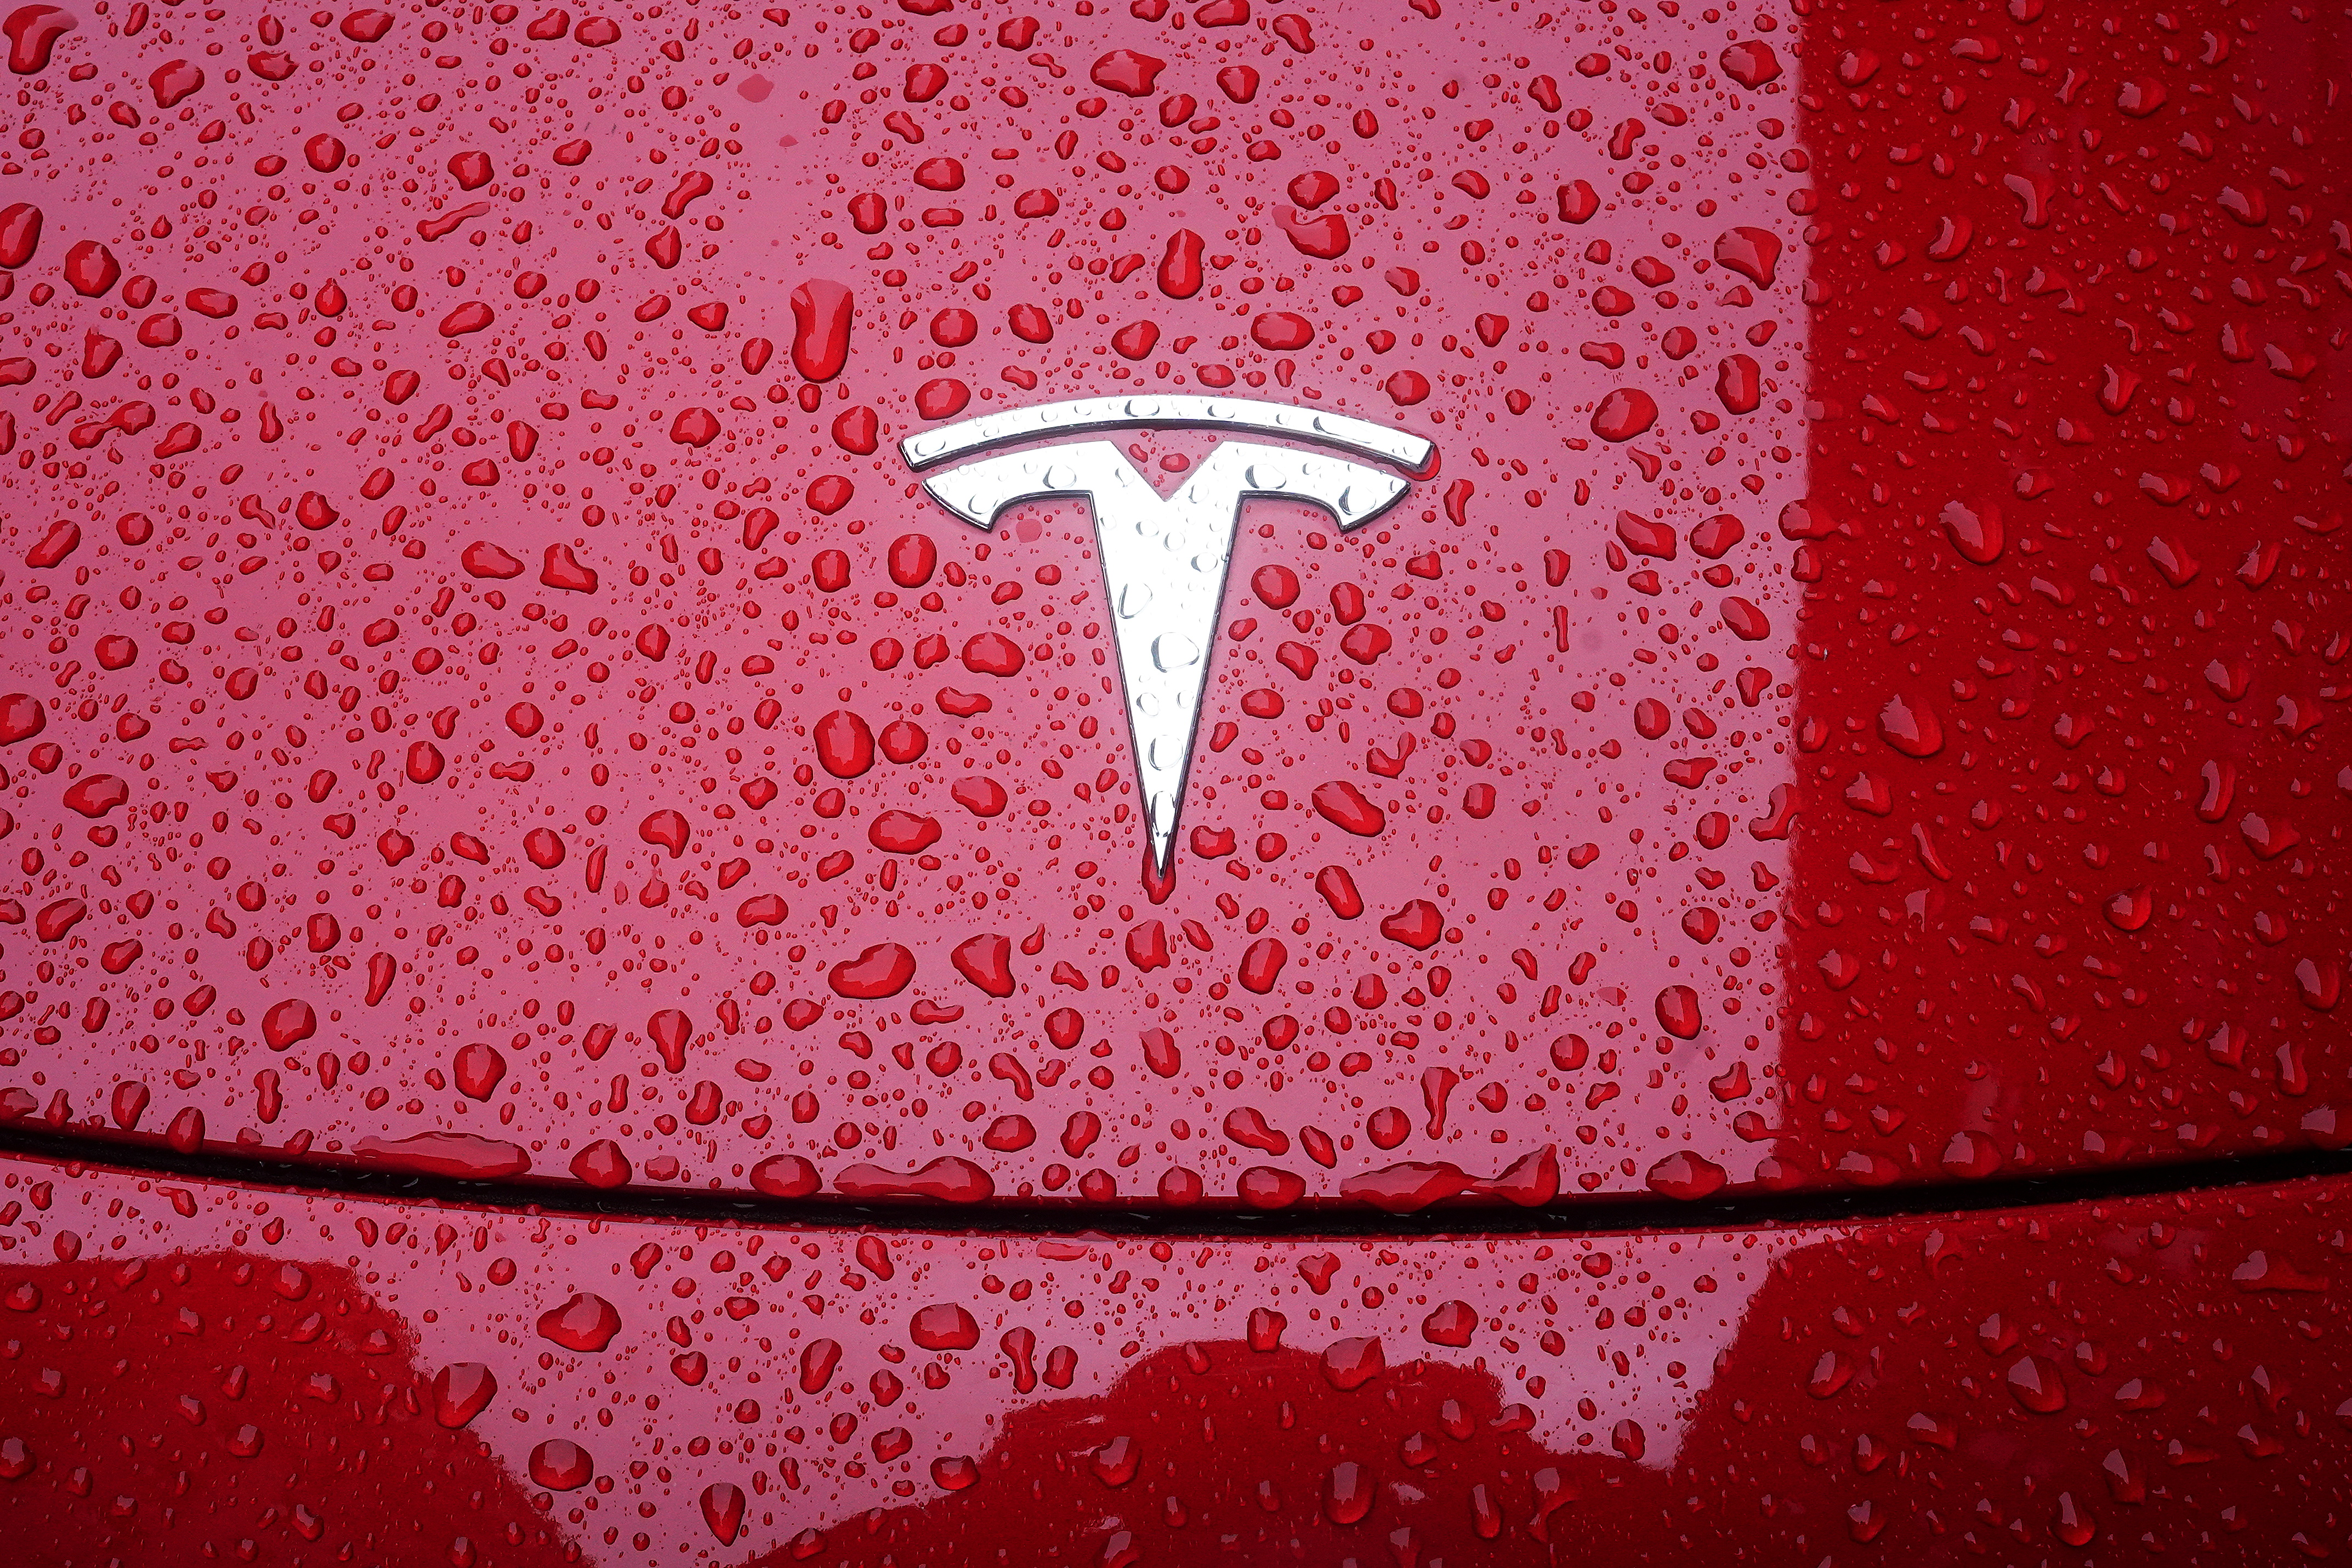 A Tesla earnings